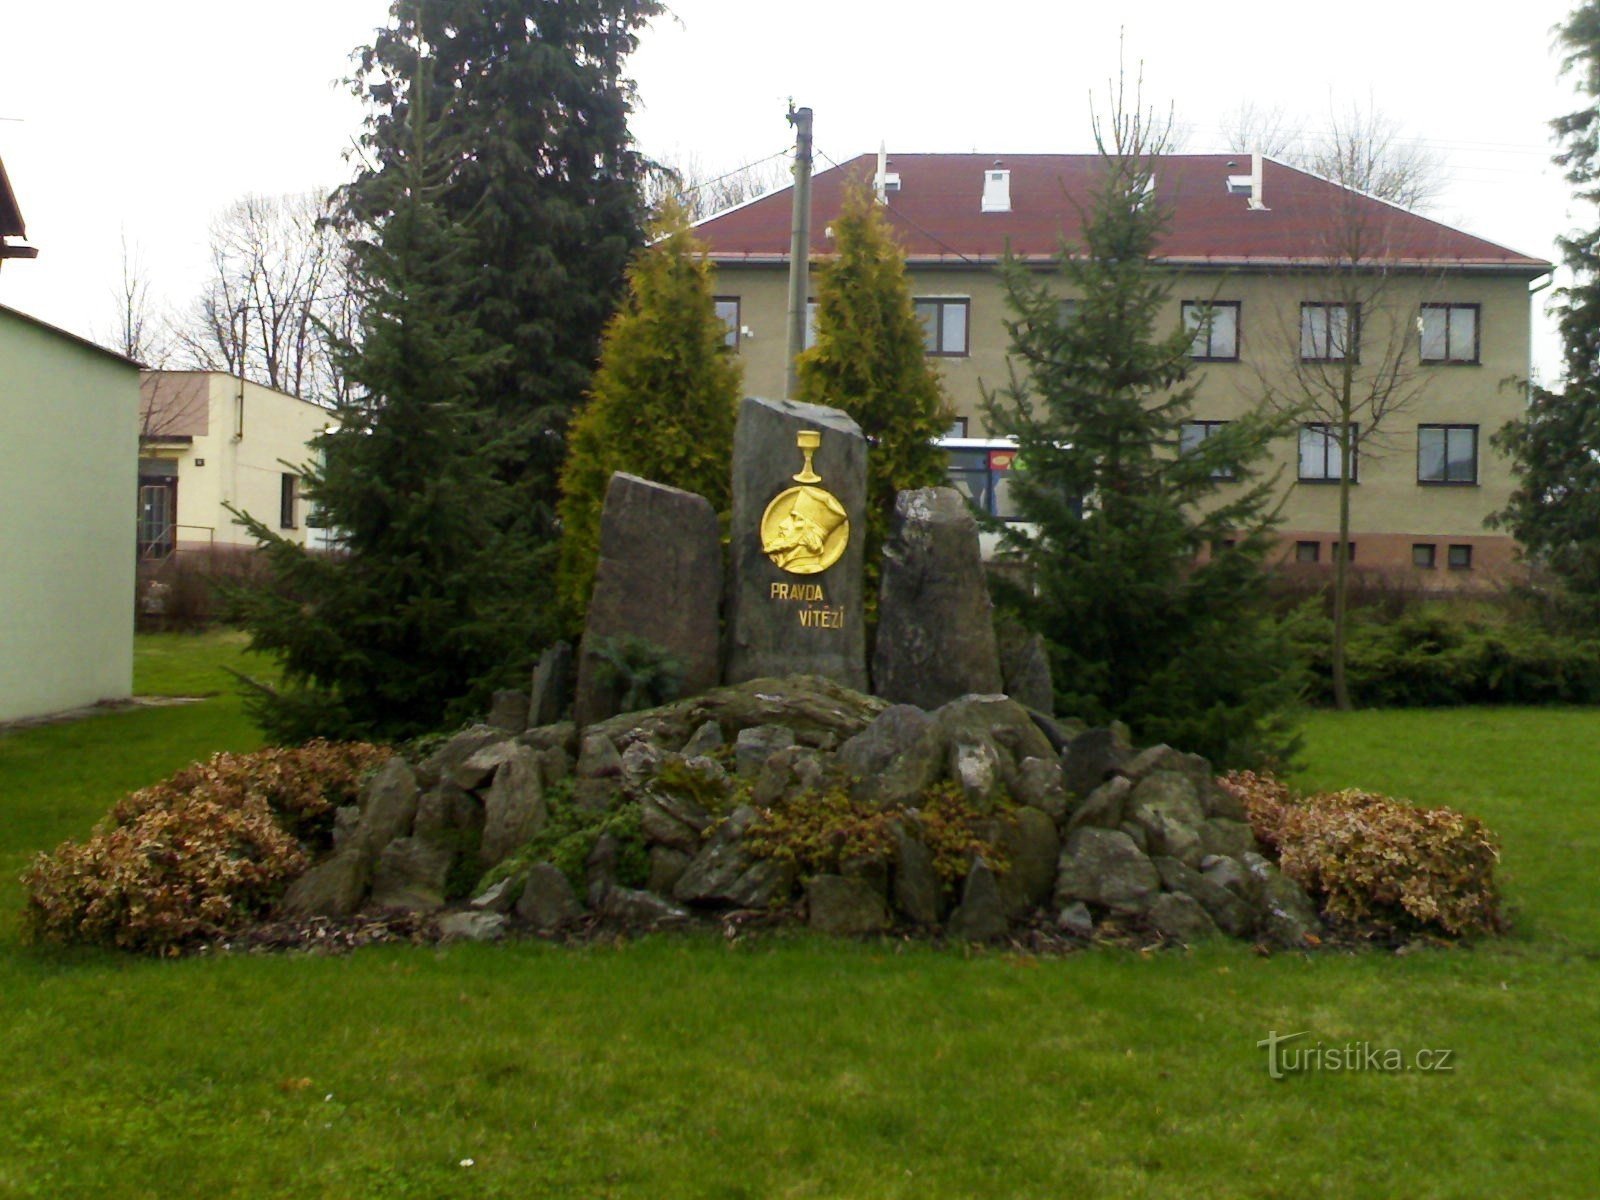 Jílovice - mestari Jan Husin muistomerkki